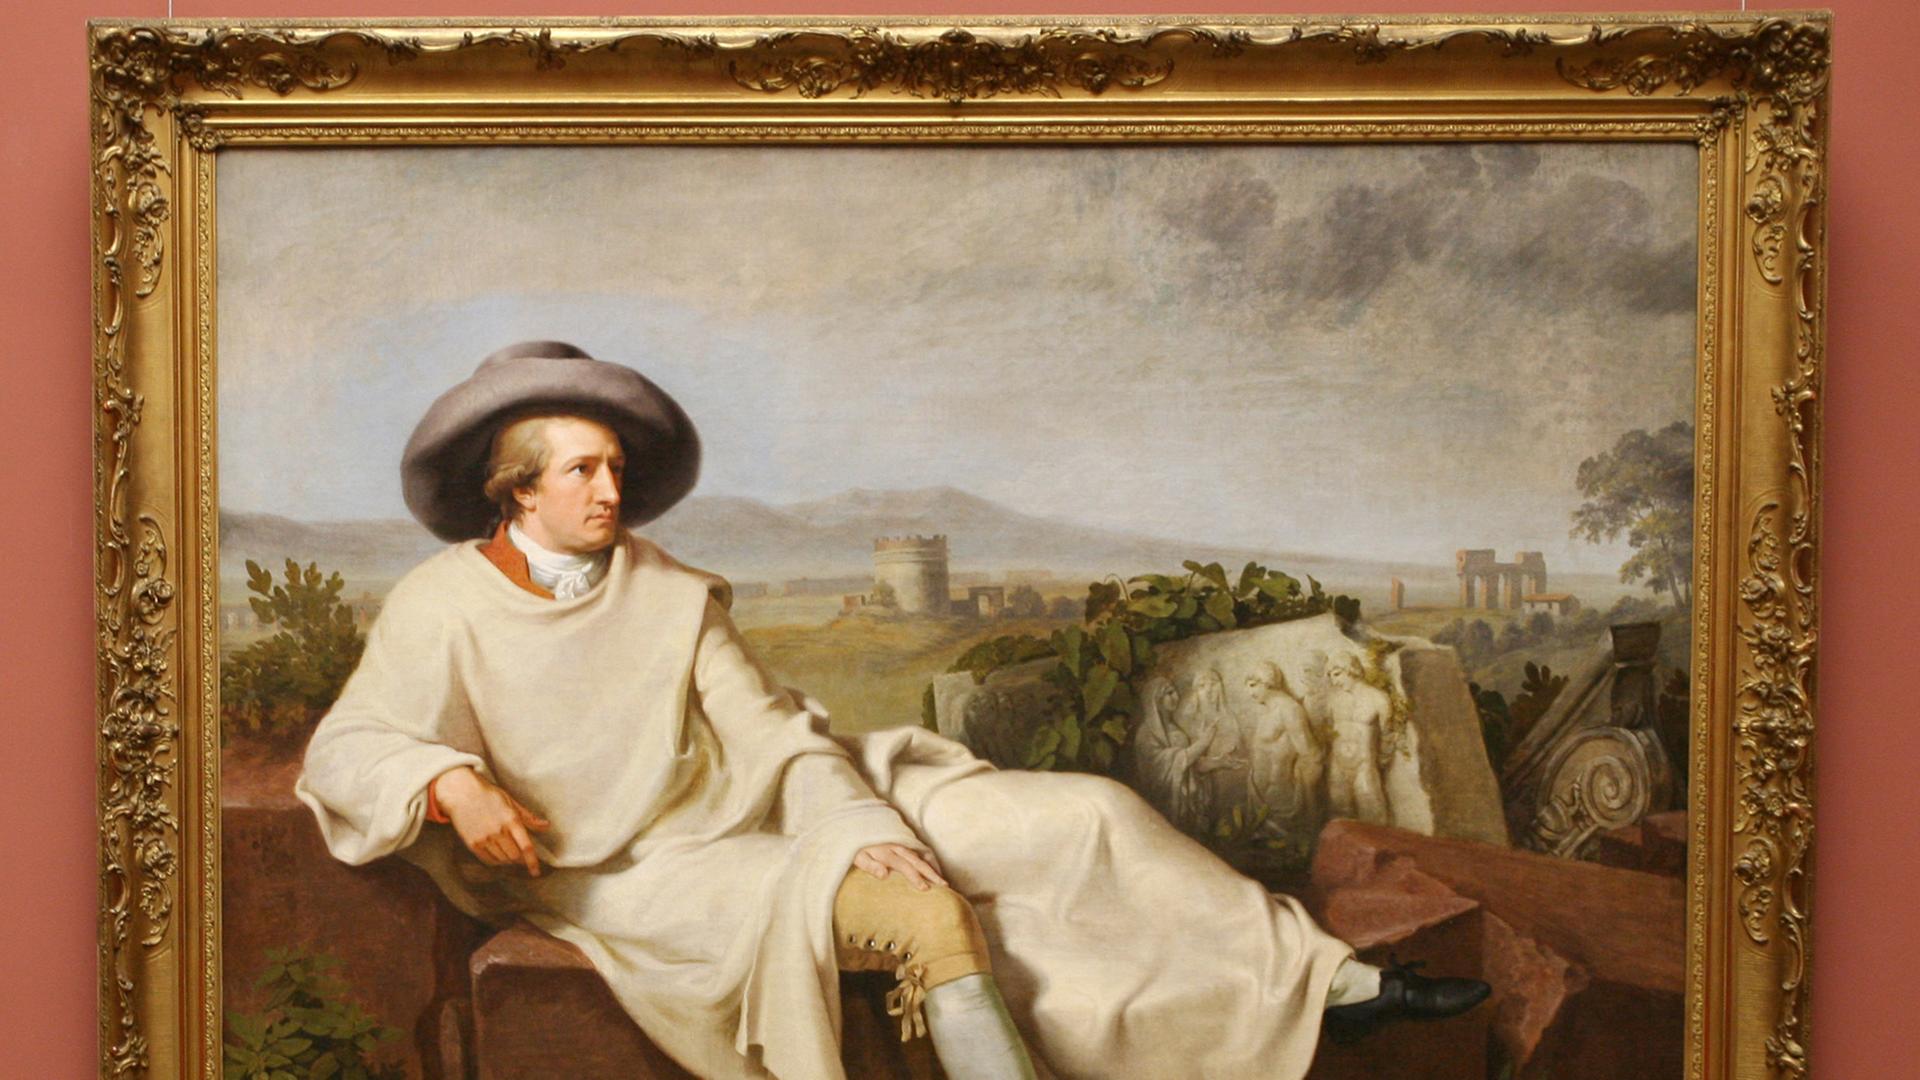 Auf dem Bild "Goethe in der römischen Campagna" von Johann Heinrich Wilhelm Tischbein liegt Goethe hingebettet vor einer italienischen Landschaft